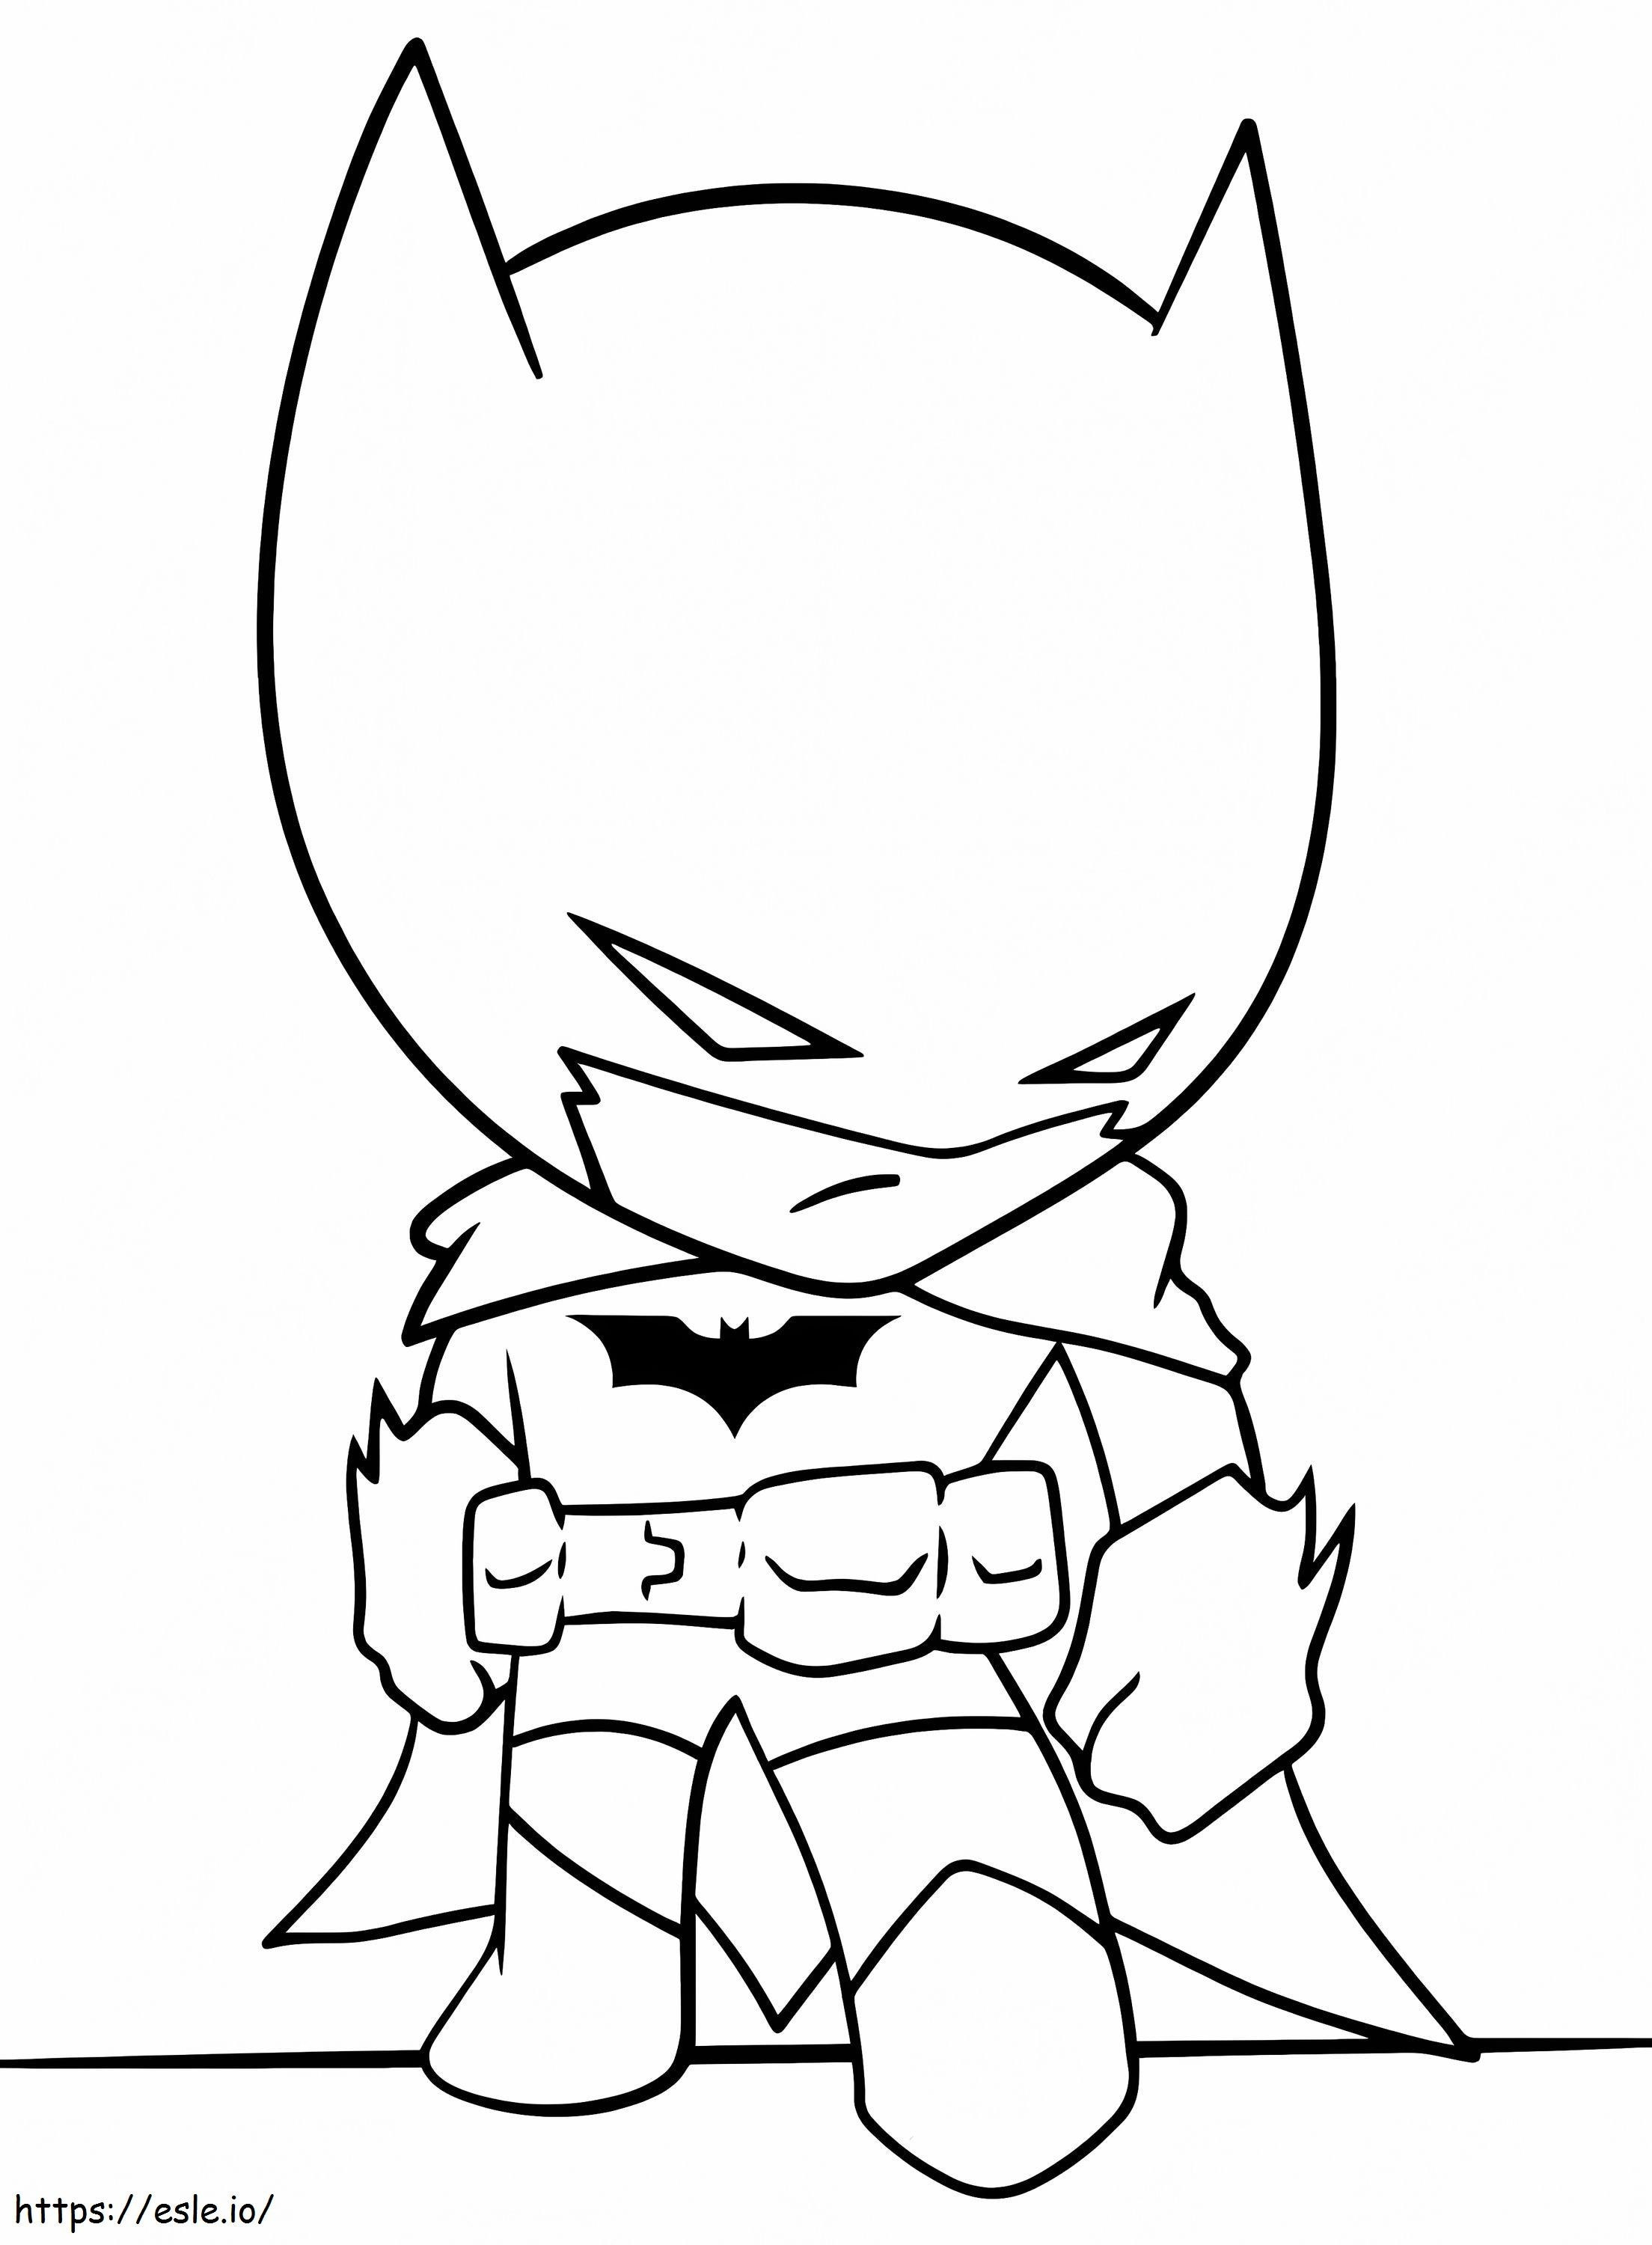 Baby Batman coloring page